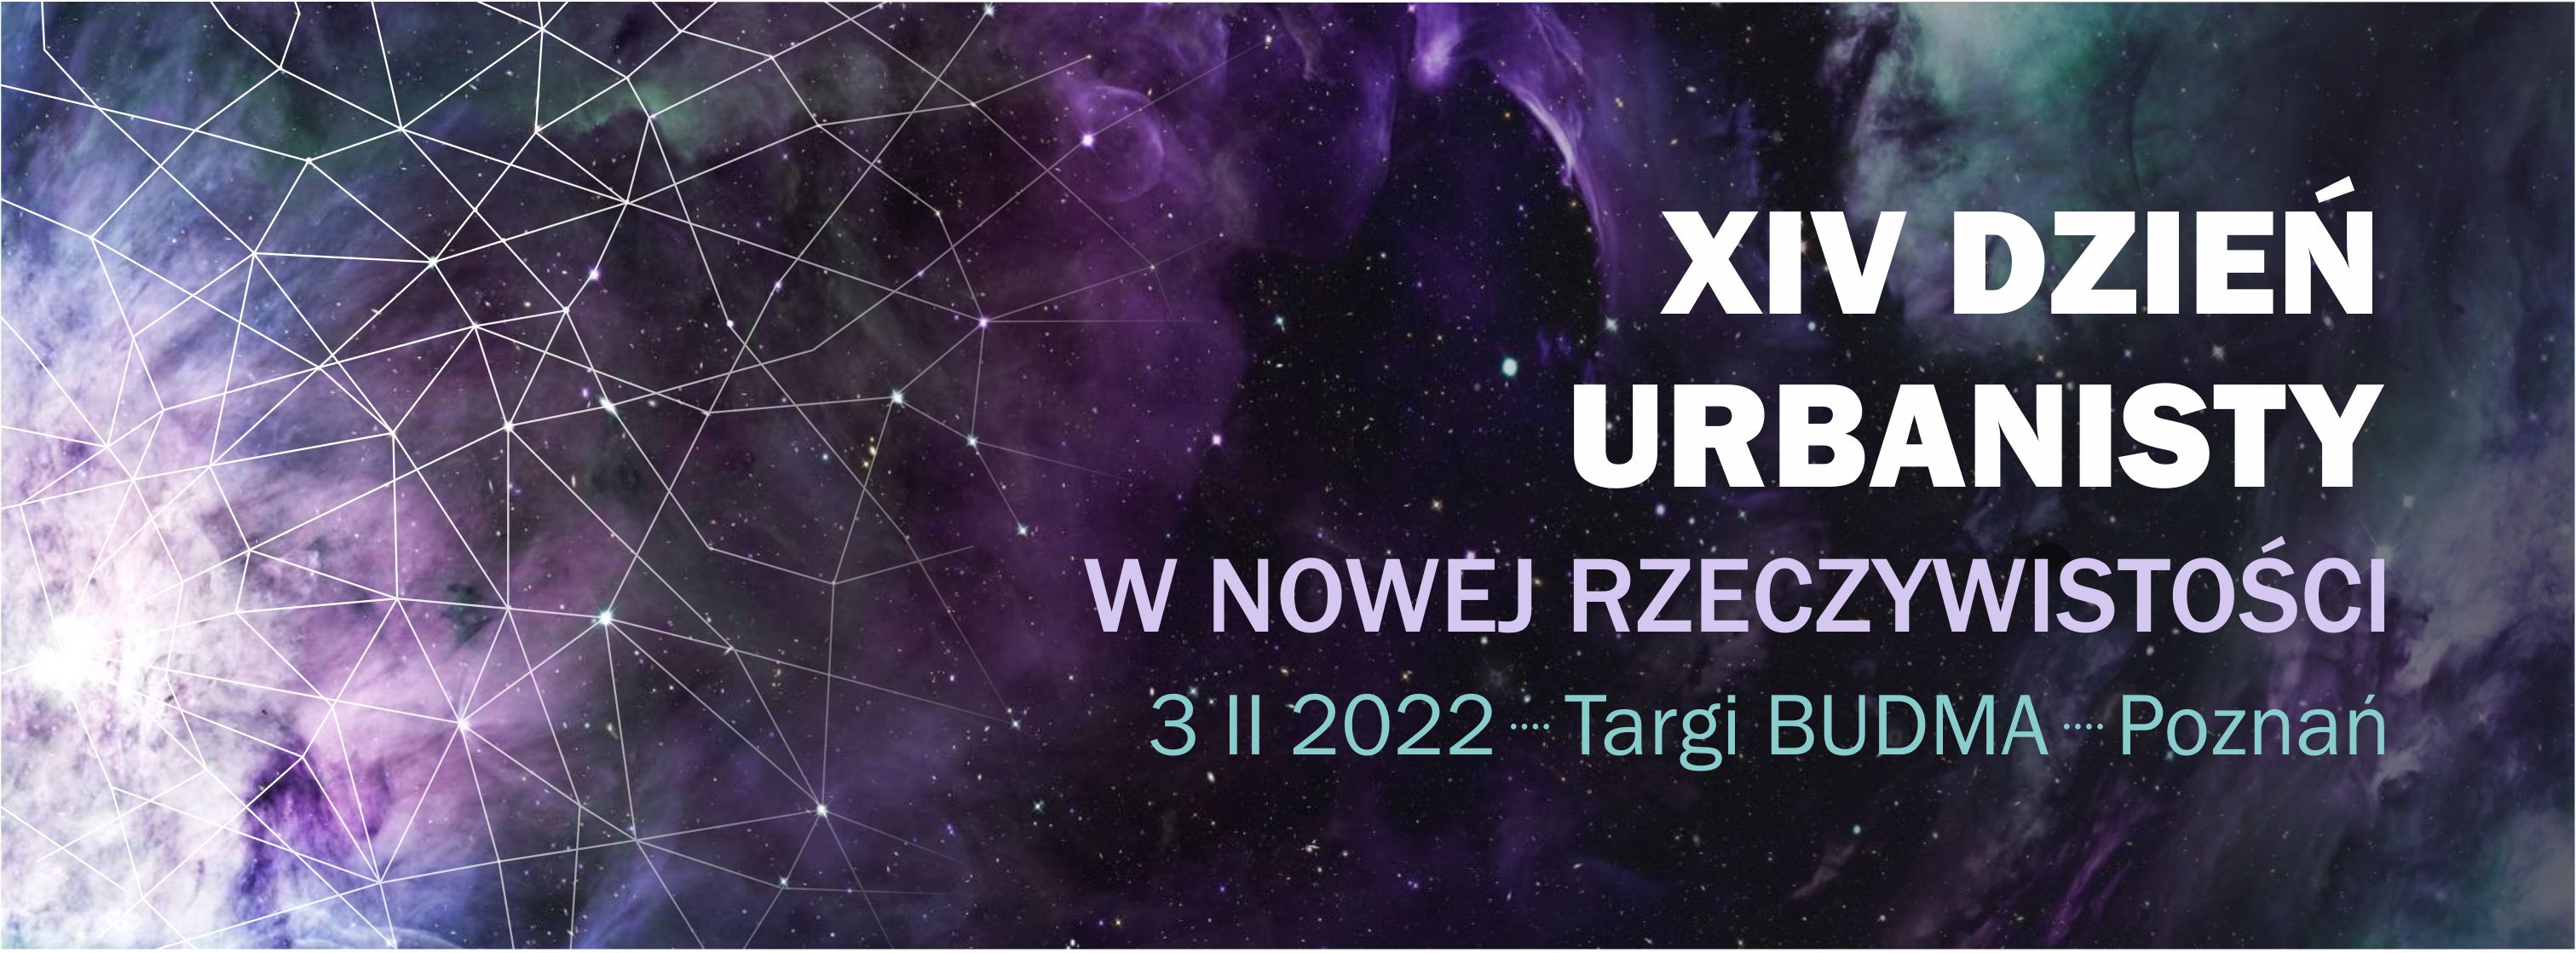 XIV_DU_2022_baner